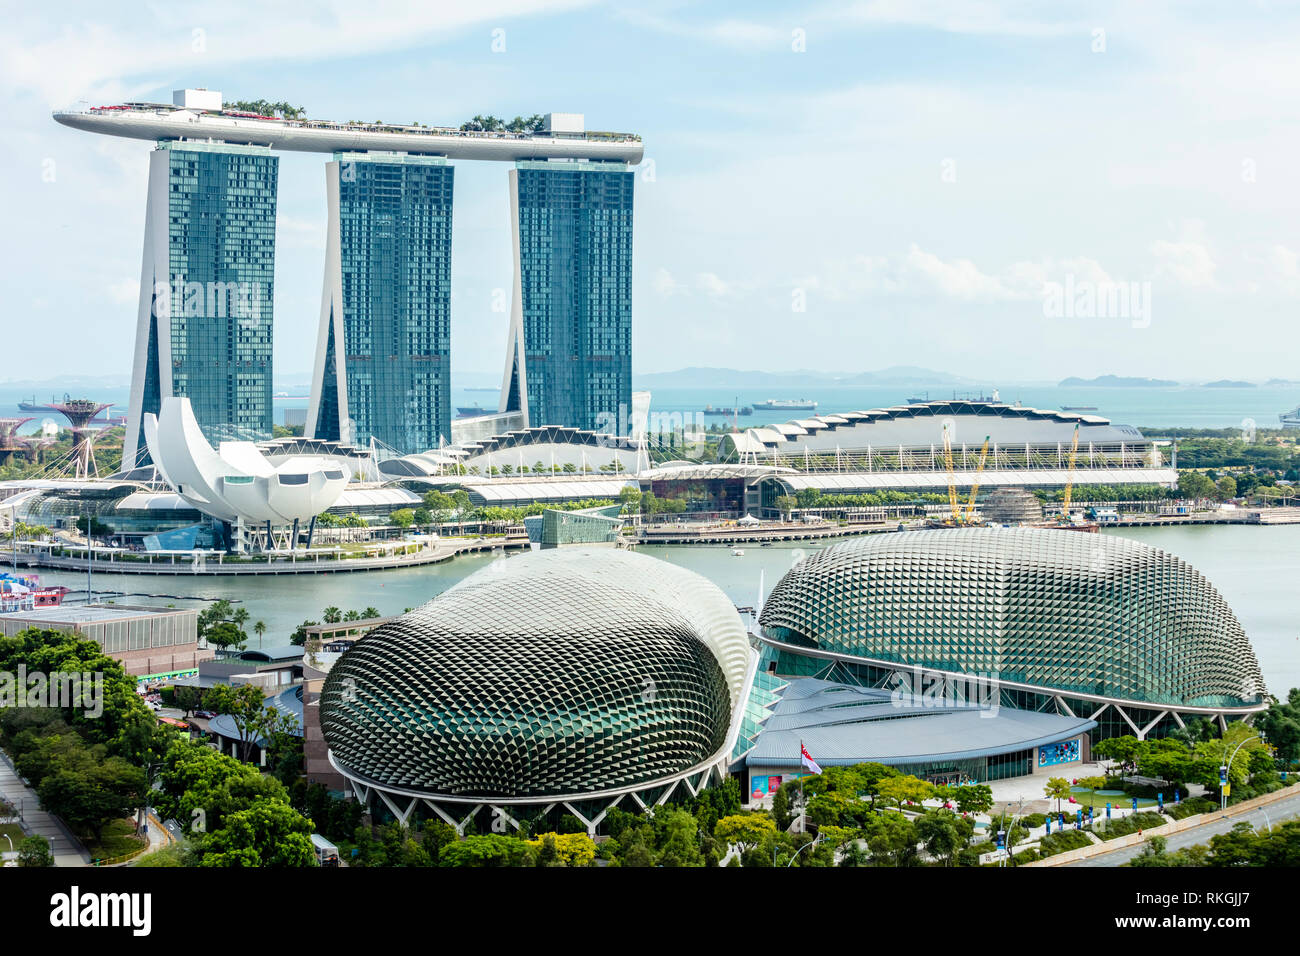 Singapur Marina Bay Sands Hotel y Esplanade Theatres on the Bay cerrar detalles arquitectónicos vista aérea durante el claro cielo de día Foto de stock